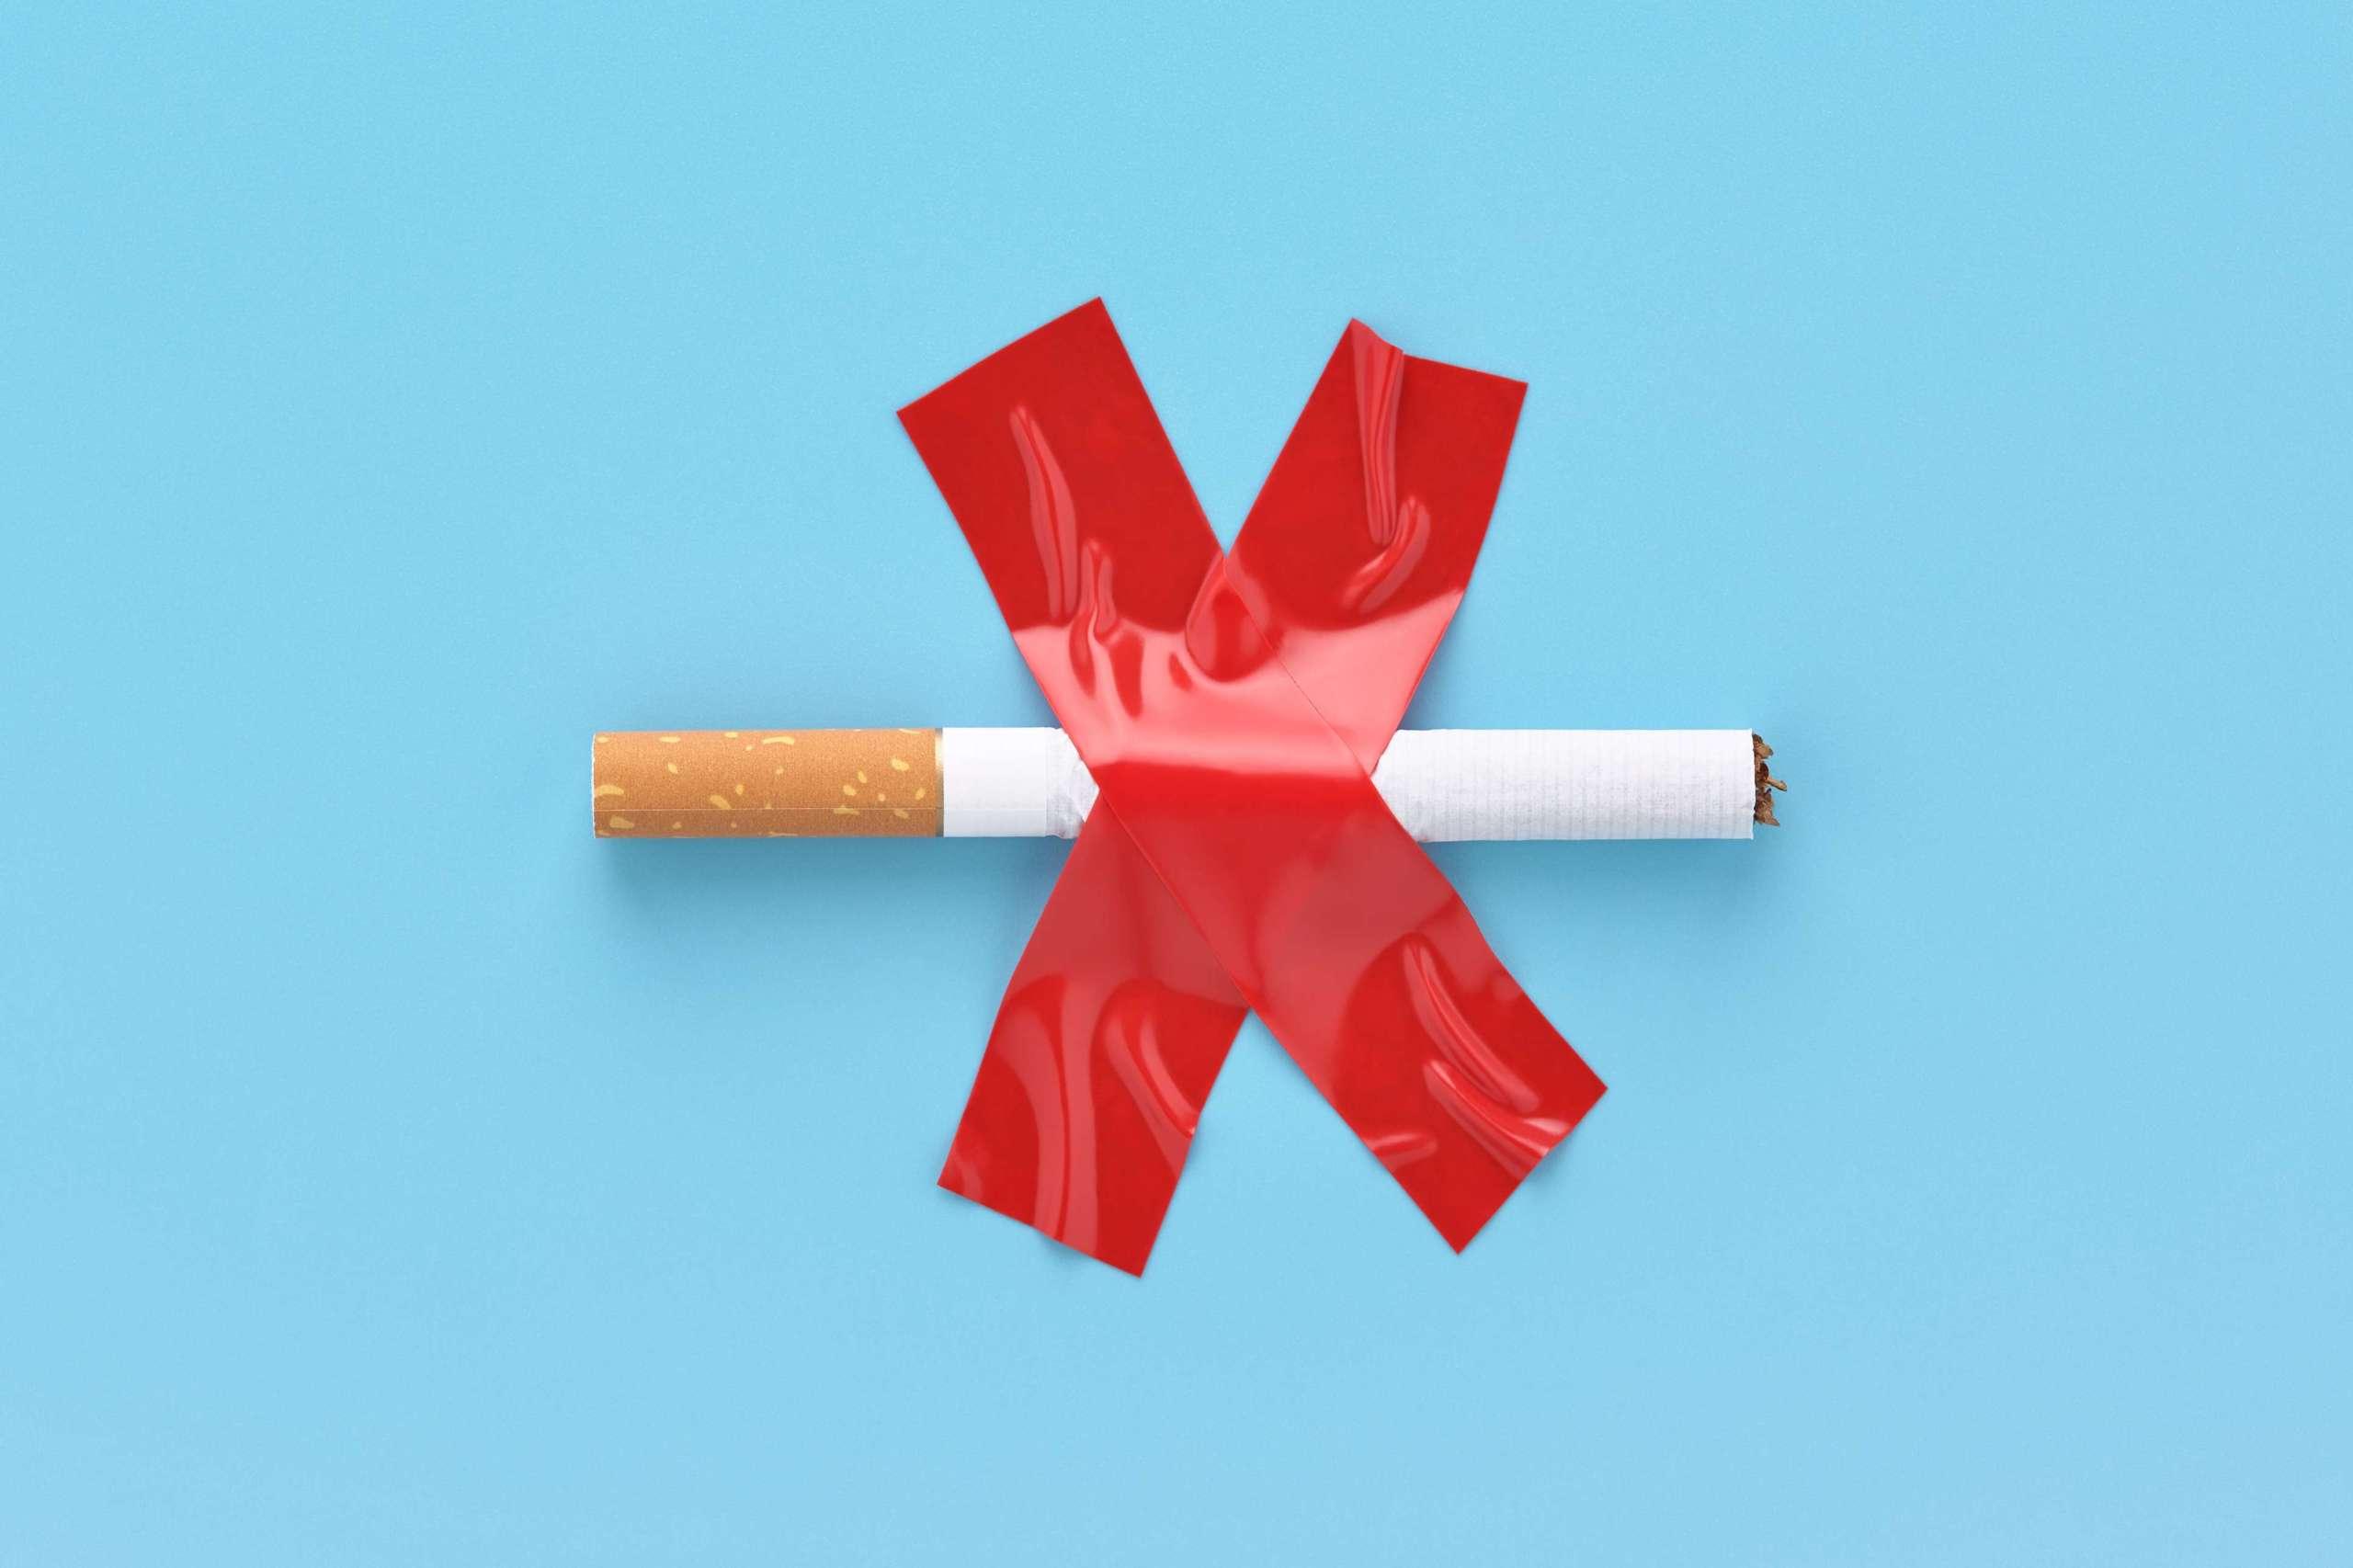 Durchgestrichene Zigarette, mit rotem Klebeband auf blauem Grund aufgeklebt. Nichtraucherkonzept.